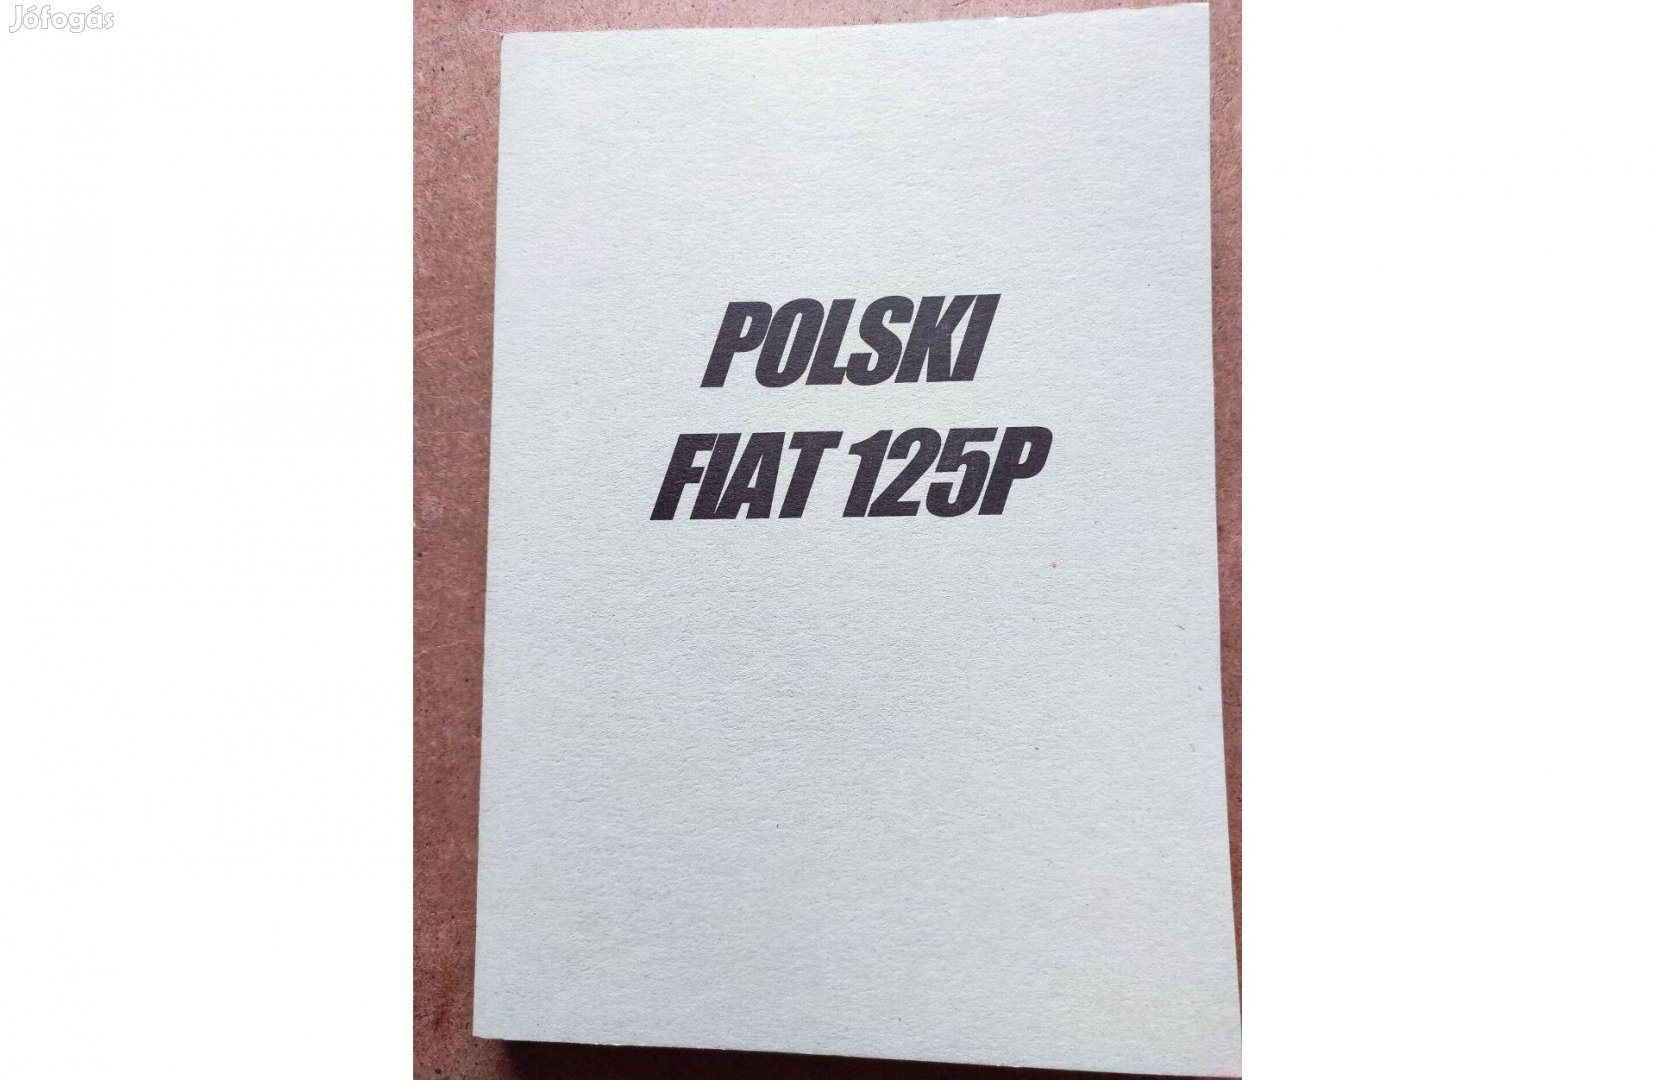 Polski Fiat 125 p javítási karbantartási könyv